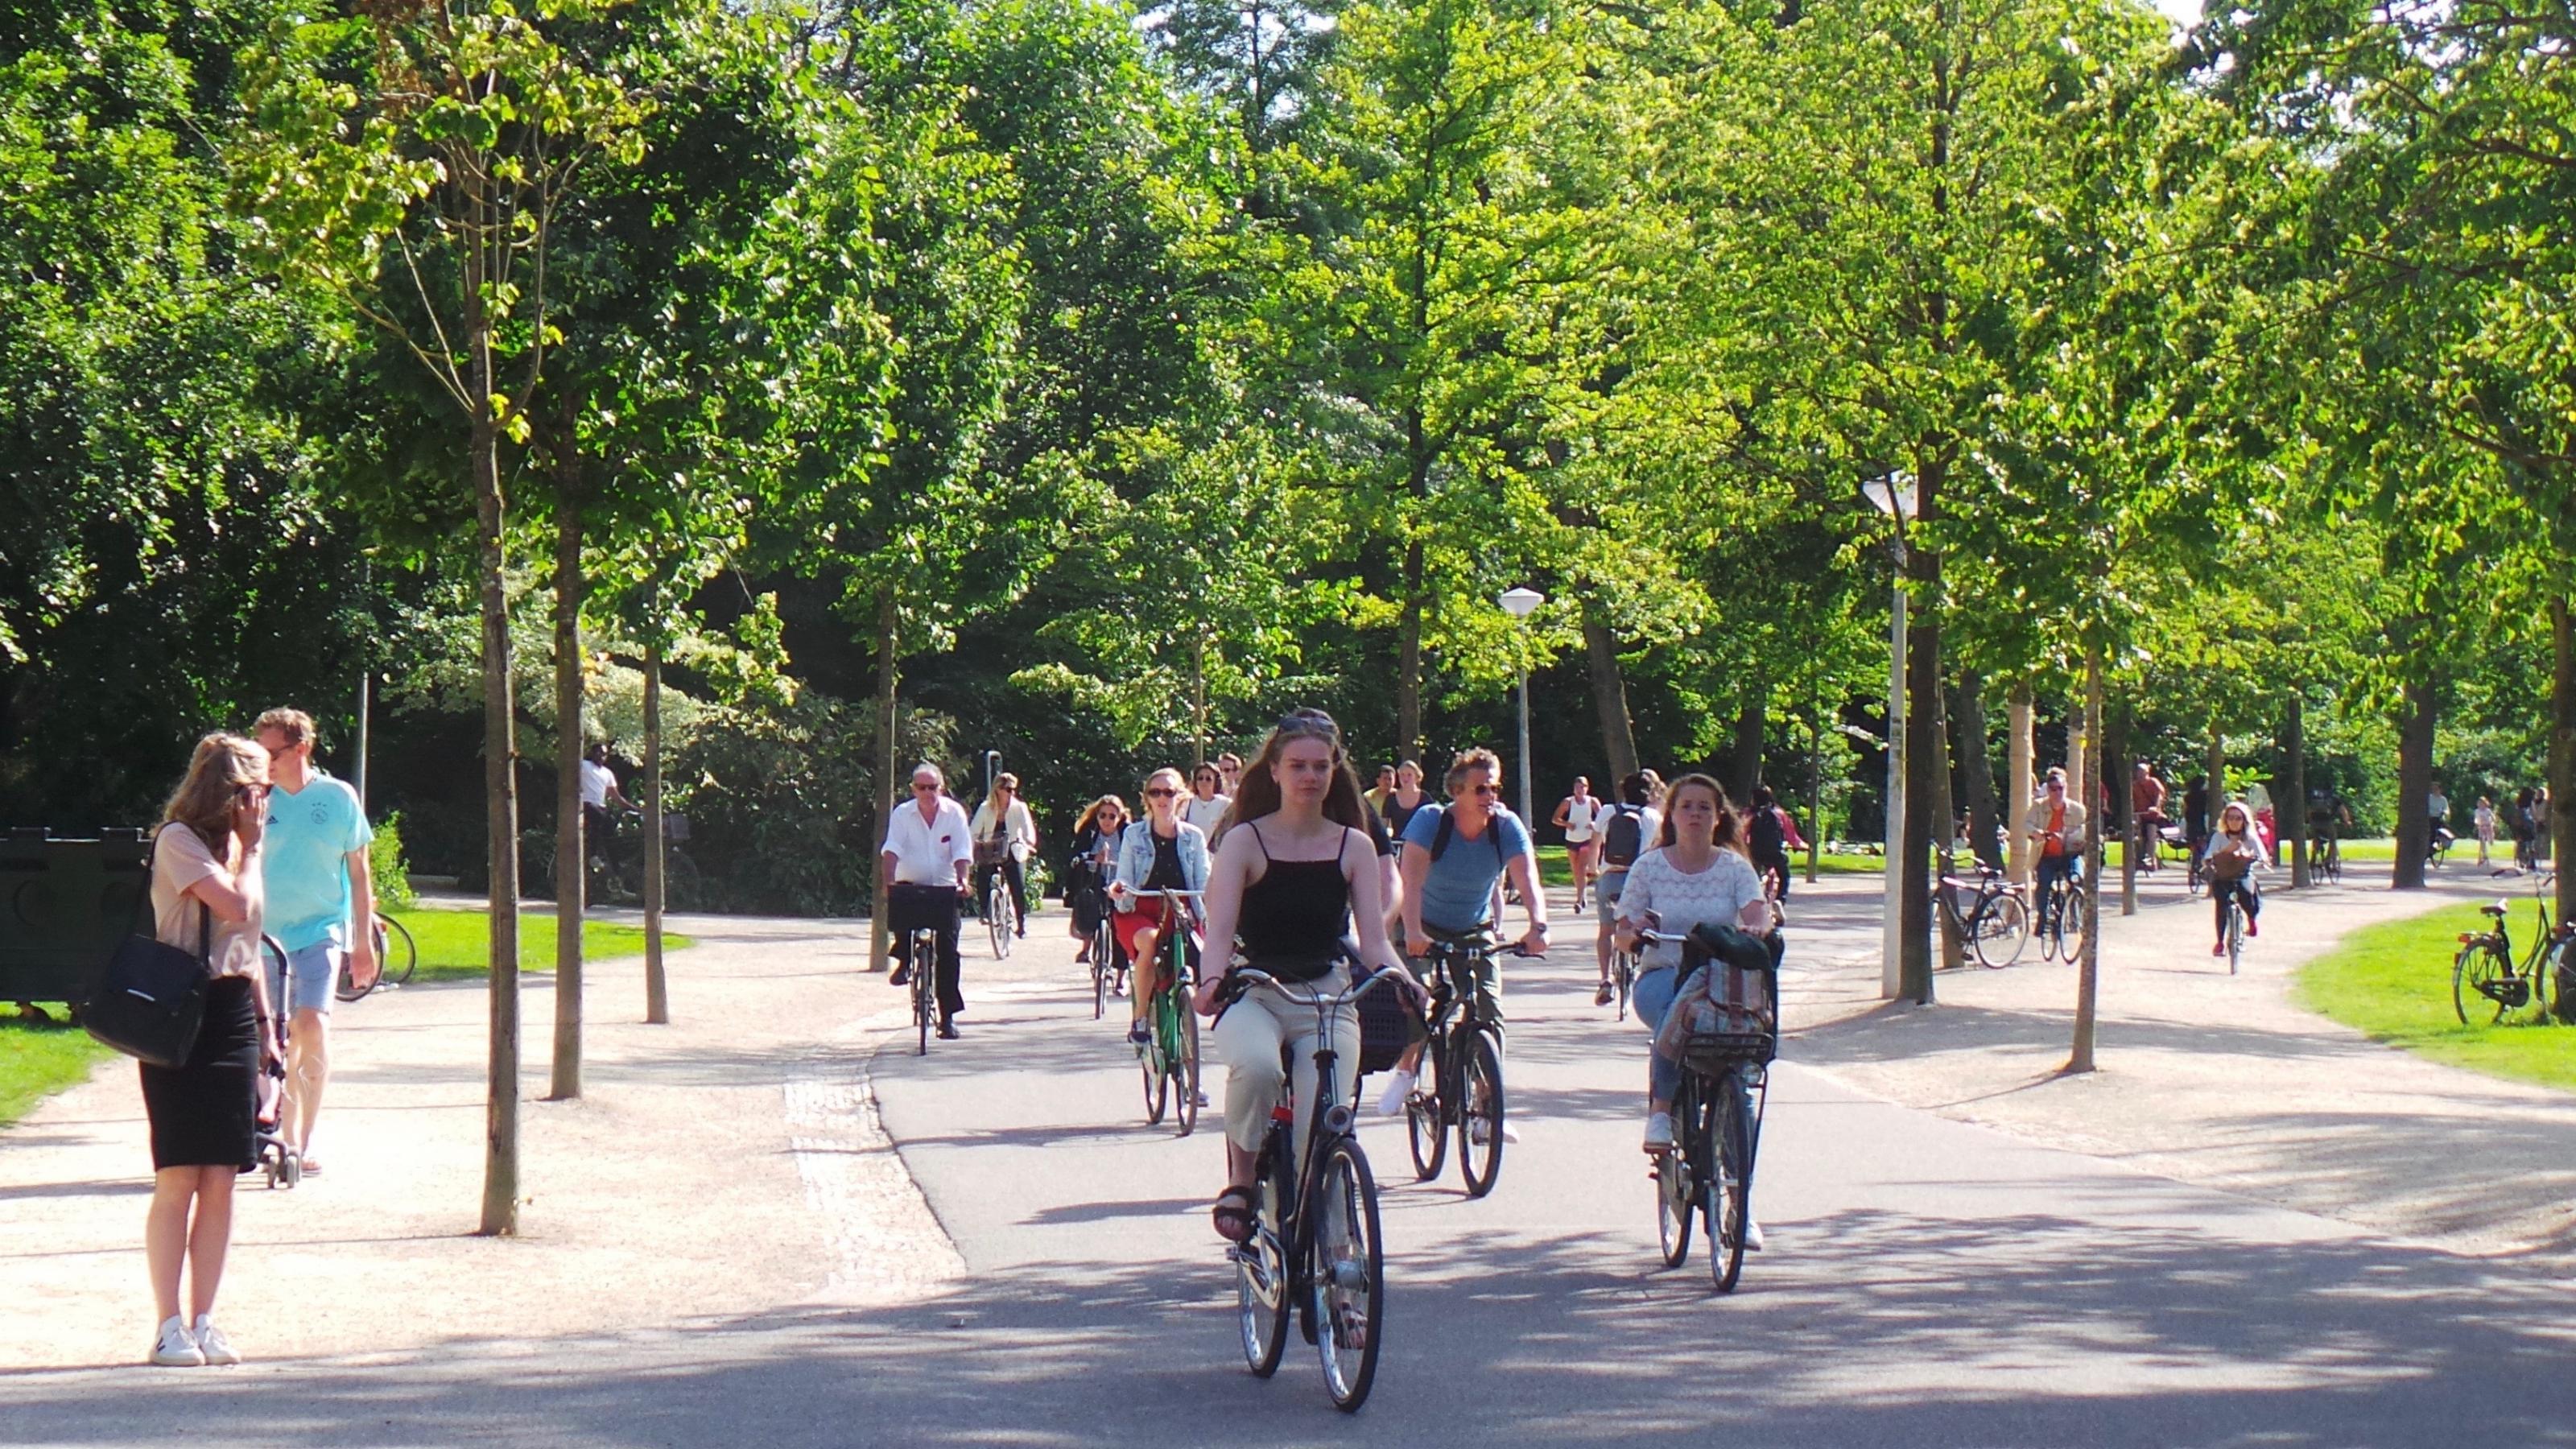 Blick auf eine von vielen Radfahrern genutzte Straße im Park. Sie ist gesäumt von grünen Bäumen und die Sonne scheint.